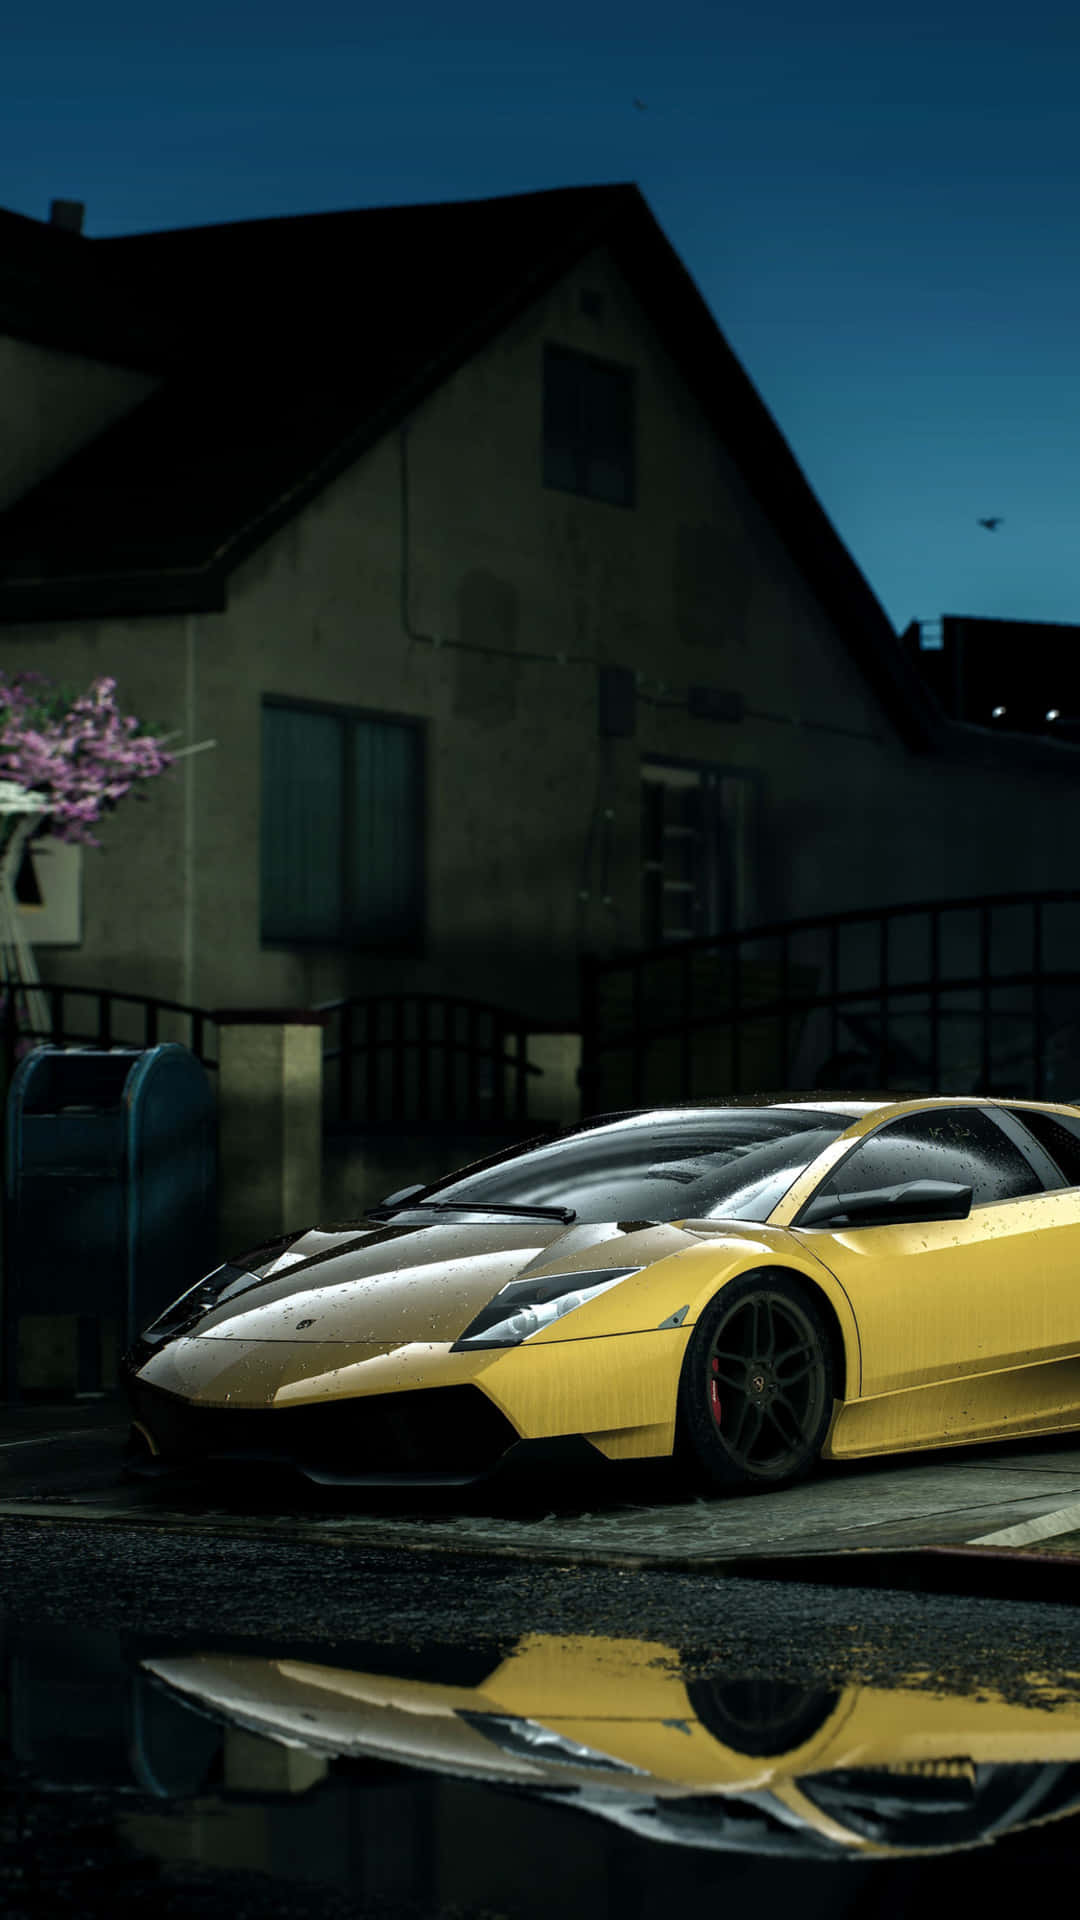 Fondode Pantalla Para Iphone Xs De Need For Speed Payback Con Un Lamborghini Aventador Amarillo.